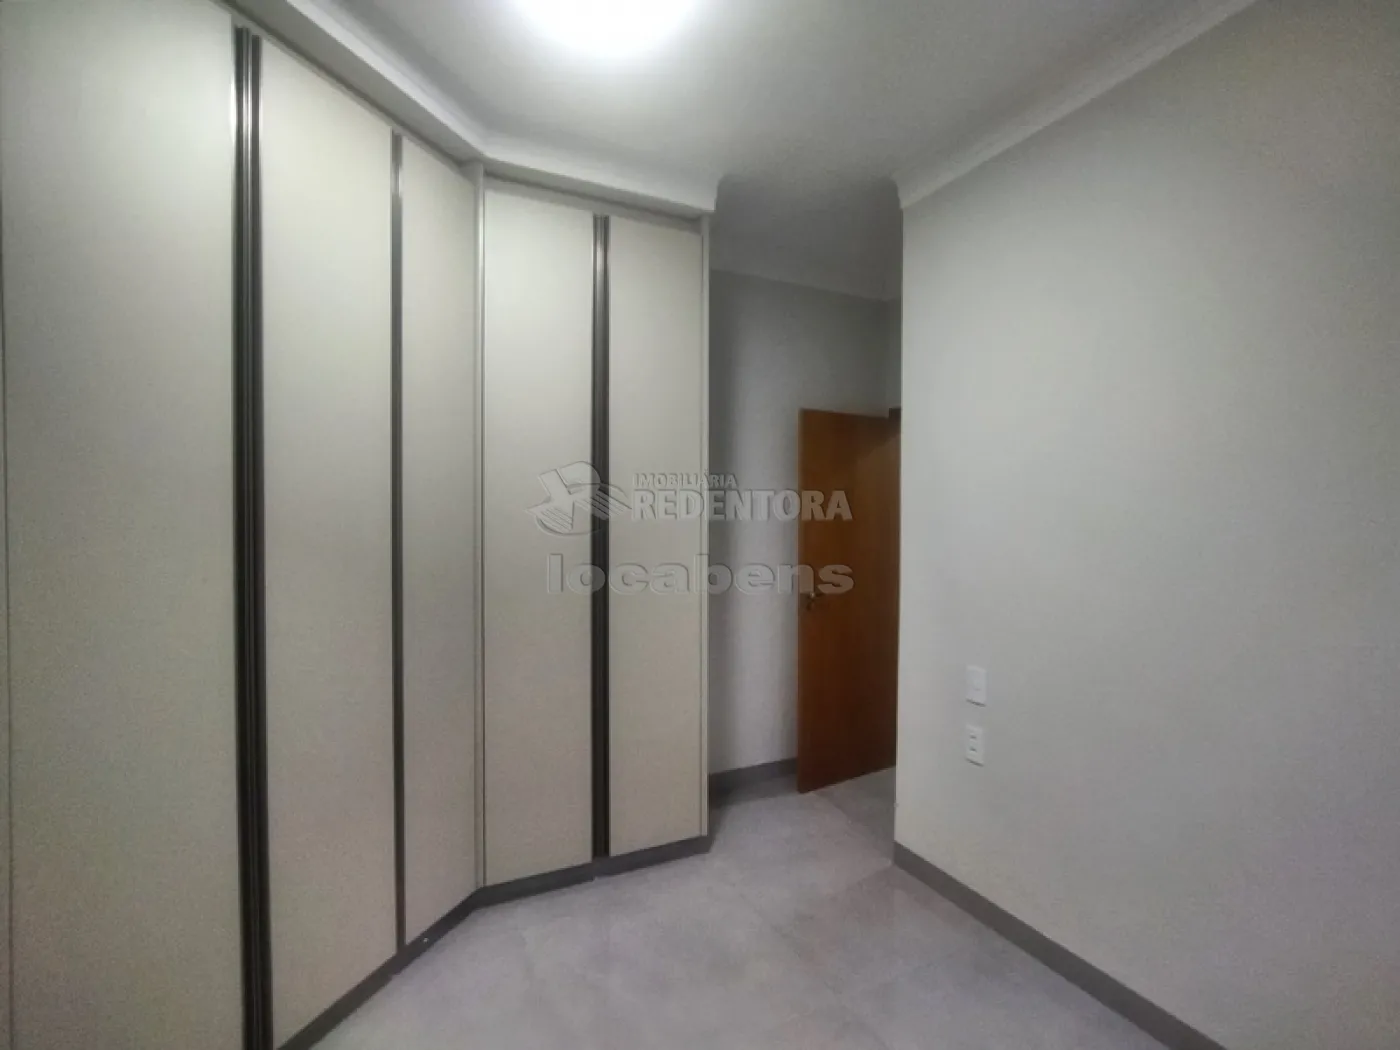 Comprar Casa / Condomínio em Mirassol apenas R$ 1.150.000,00 - Foto 14